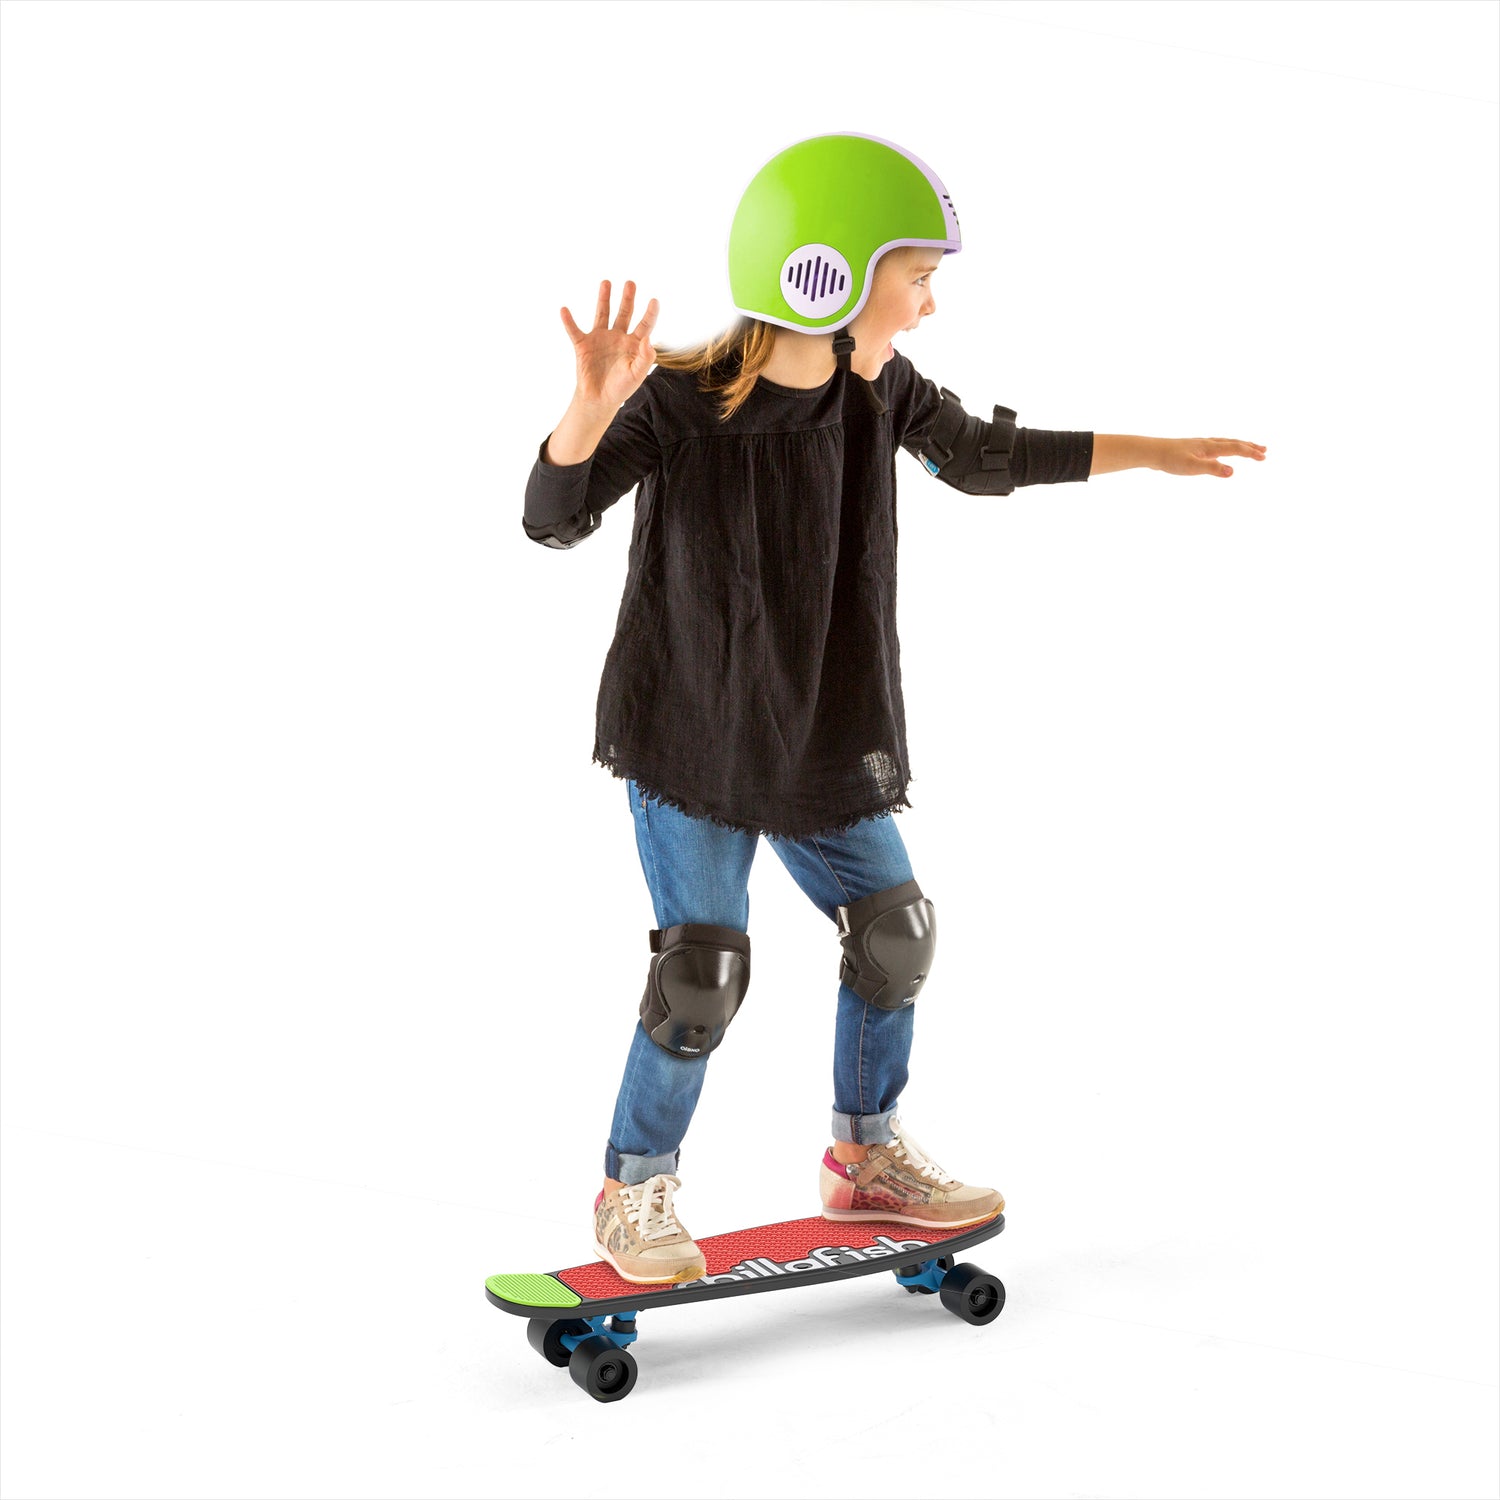 Chillafish Skatie : Skateboard personnalisable pour les enfants à